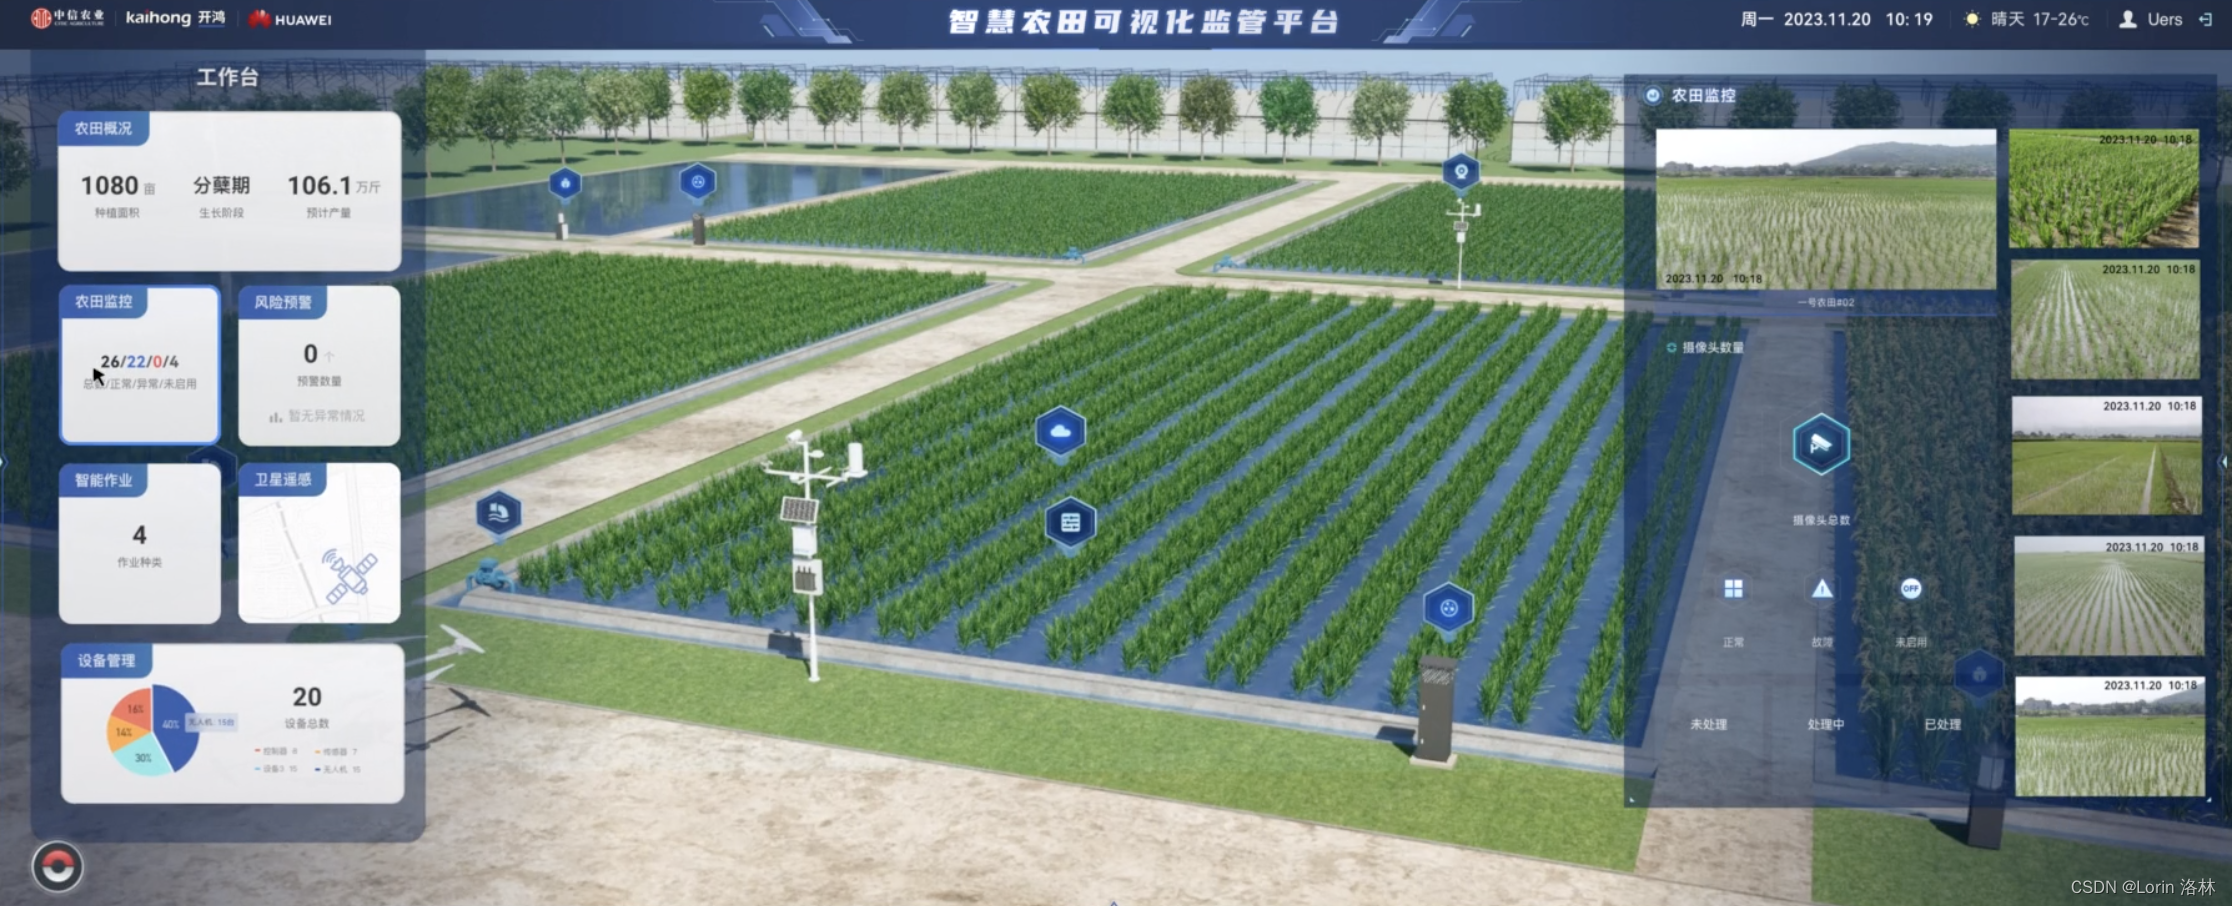 国内首个农业开源鸿蒙操作系统联合华为正式发布